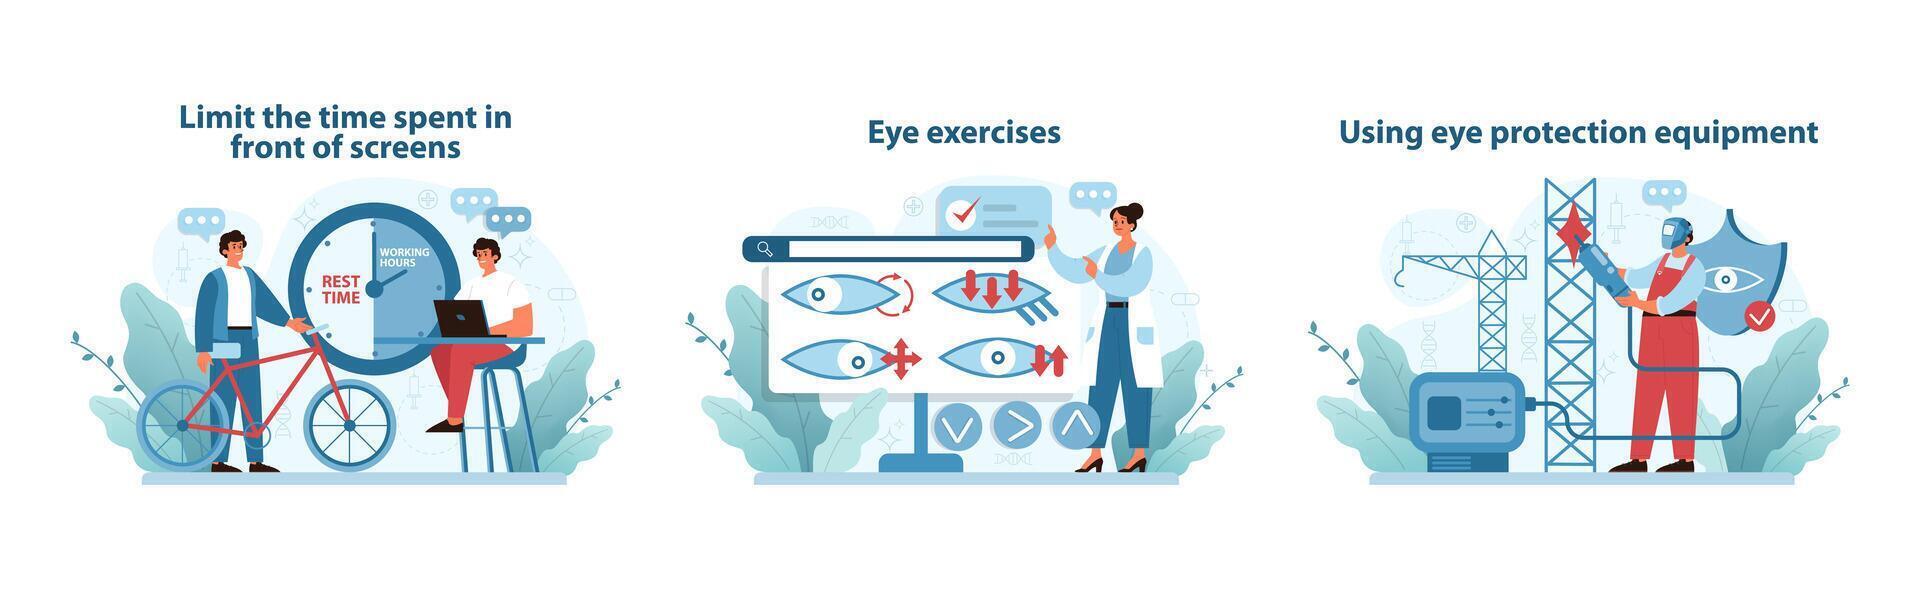 digitale occhio sforzo prevenzione impostare. illustrazioni incoraggiando schermo tempo gestione. vettore